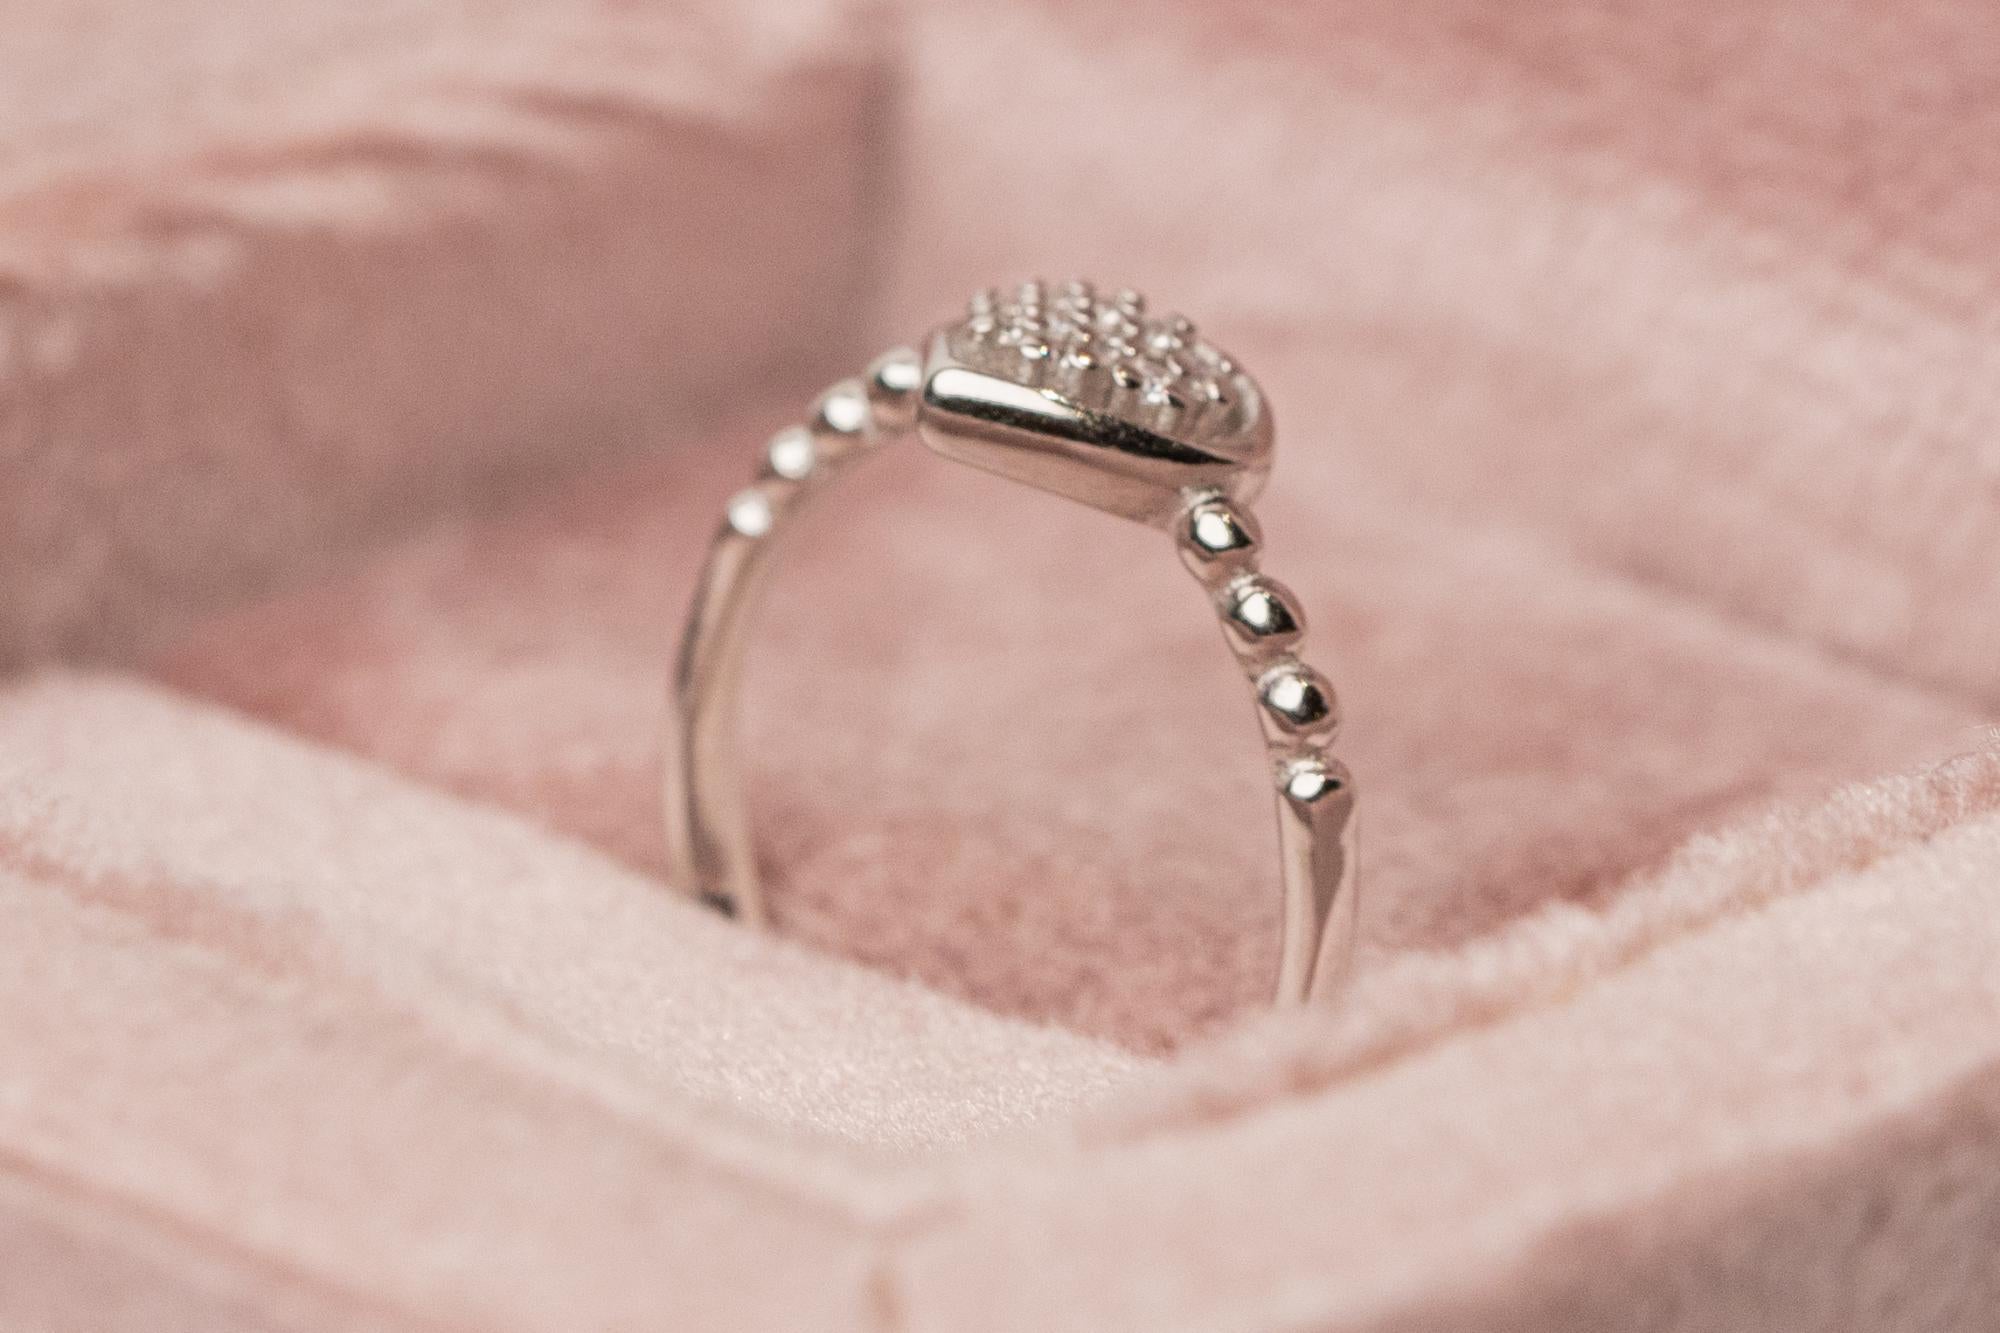 Minimalist Gold Heart Diamond Ring